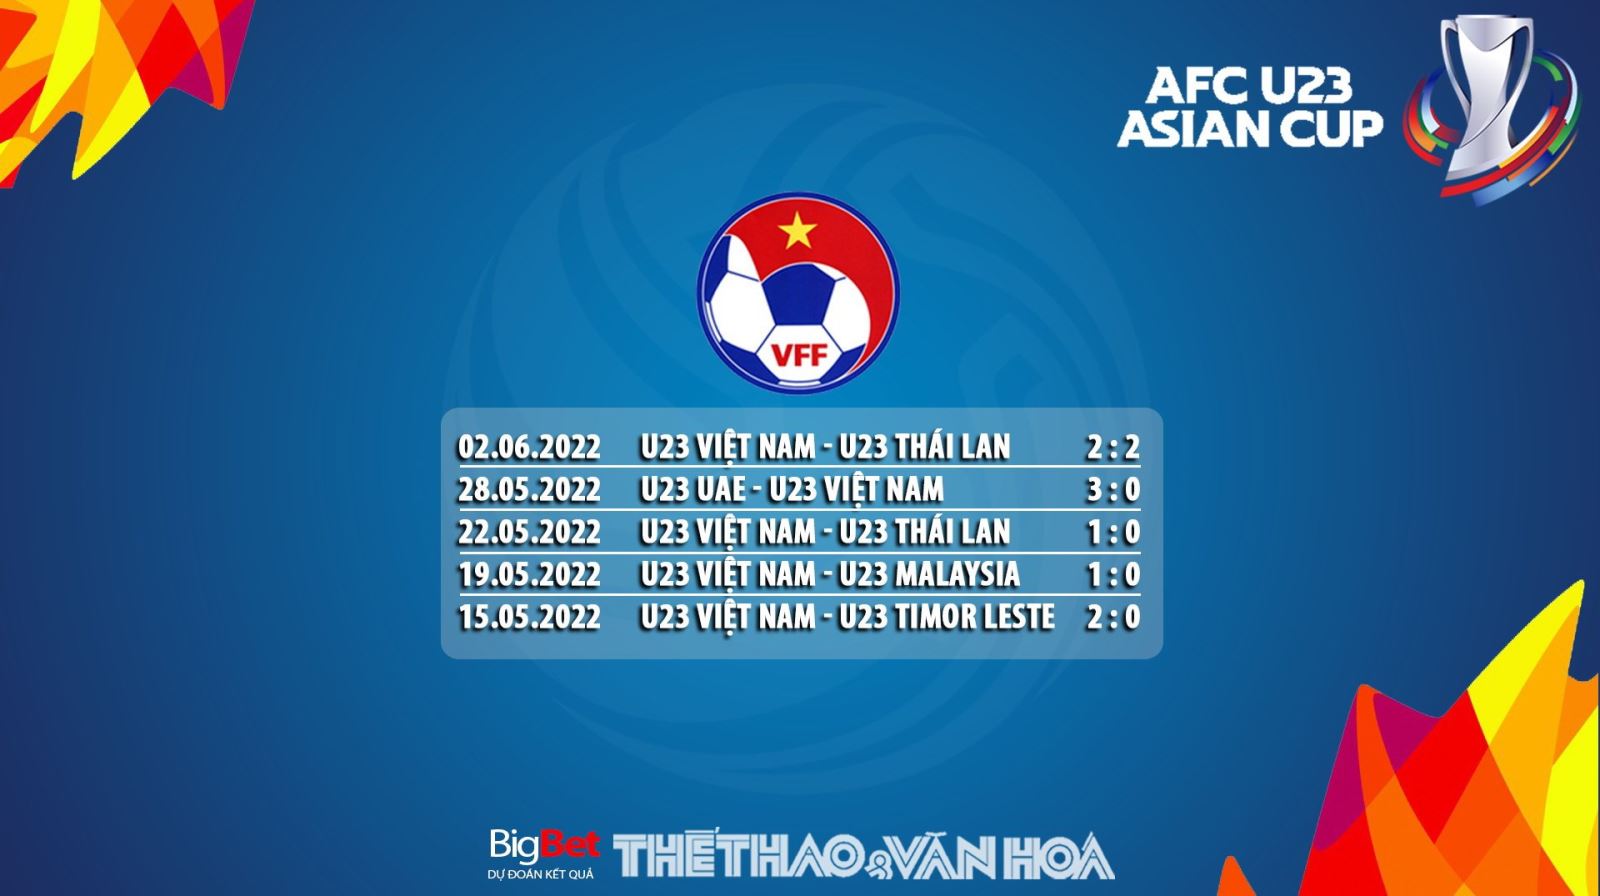 U23 Việt Nam vs U23 Hàn Quốc, nhận định kết quả, nhận định bóng đá U23 Việt Nam vs U23 Hàn Quốc, nhận định bóng đá, U23 Việt Nam, U23 Hàn Quốc, keo nha cai, dự đoán bóng đá, U23 châu Á